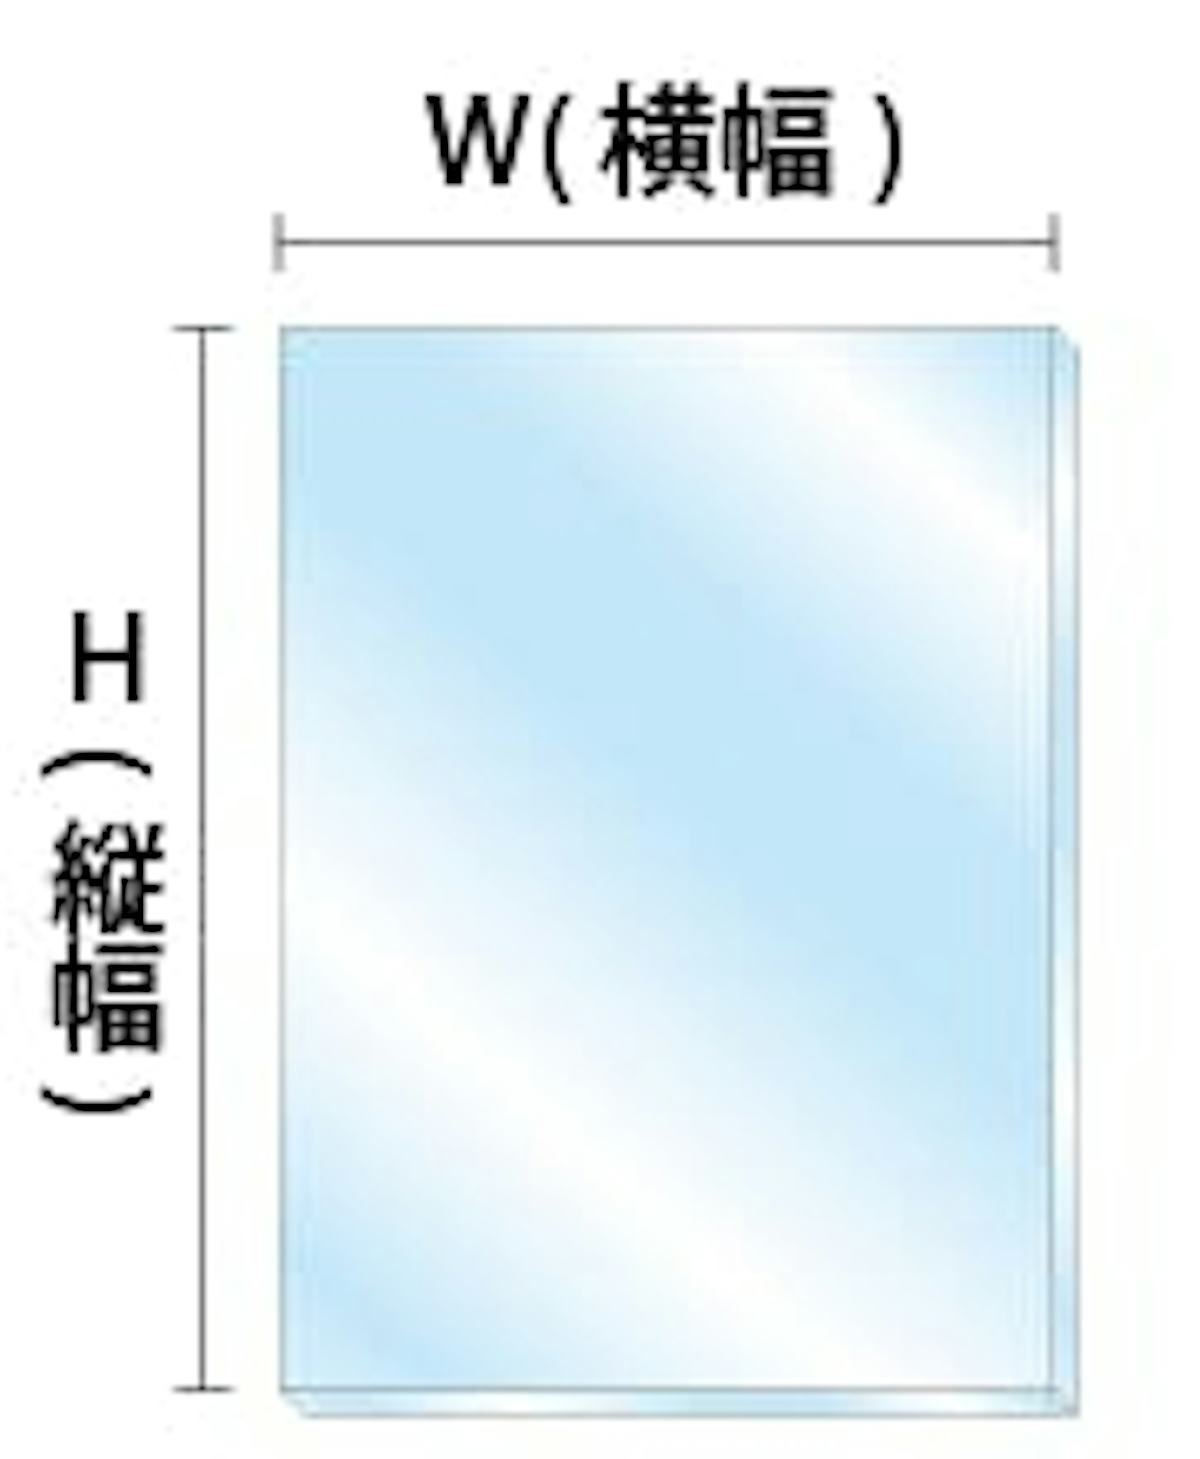 フロート板ガラス(5ミリ) サイズオーダー参考価格 画像